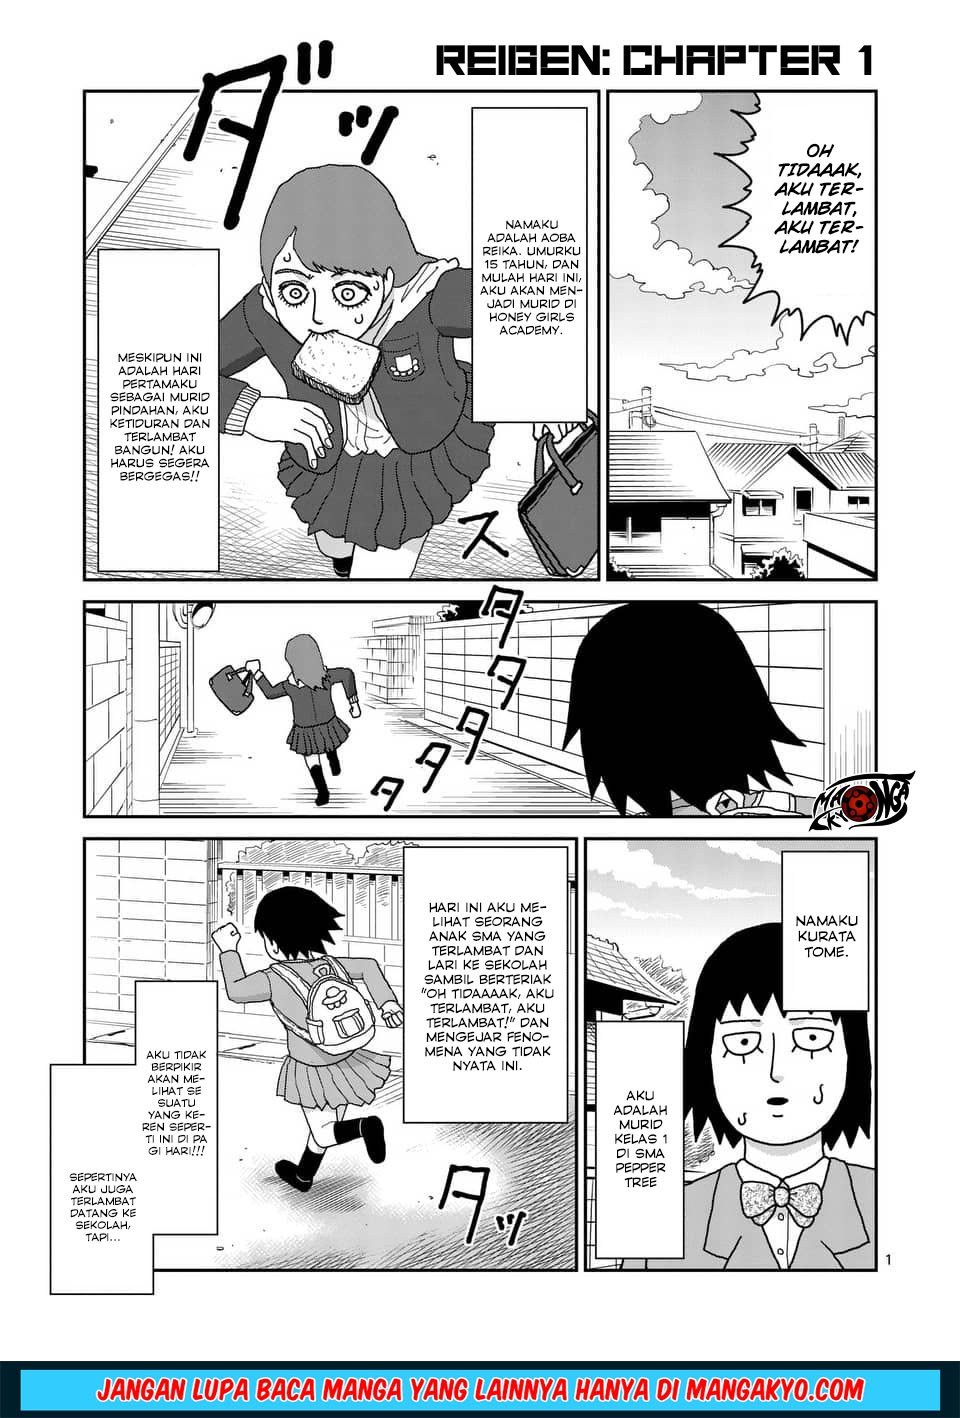 Baca Reigen: Reikyuuchi Max 131 no Otoko Chapter 1  - GudangKomik